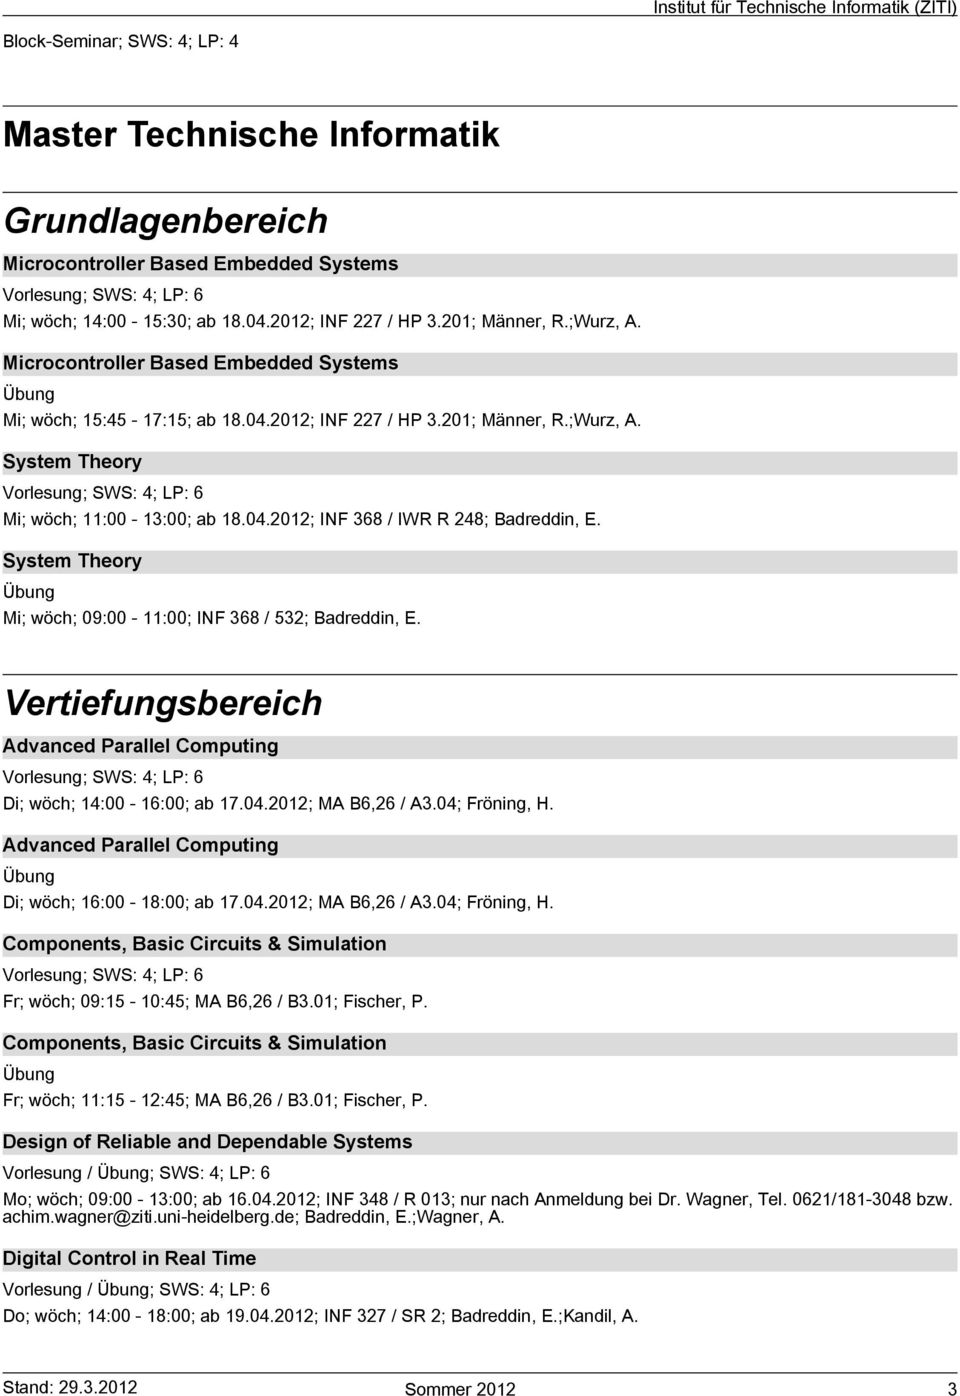 Di; wöch; 16:00-18:00; ab 17.04.2012; MA B6,26 / A3.04;Fröning, H. Fr; wöch; 09:15-10:45; MA B6,26 / B3.01;Fischer, P.